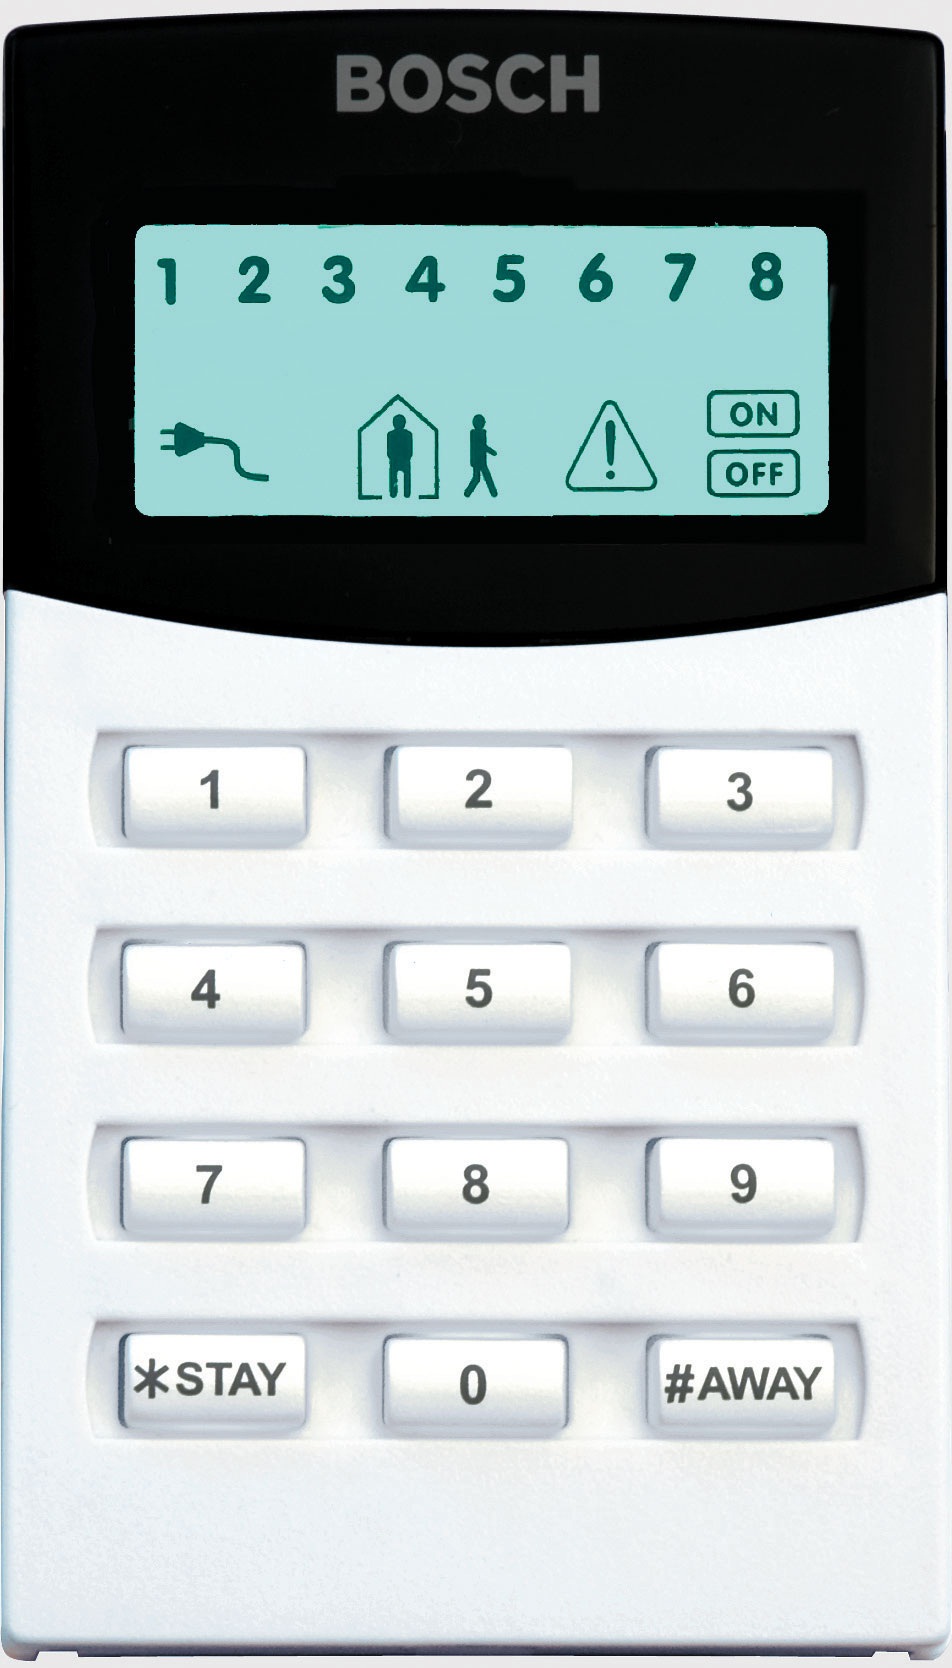 Bosch Solution8 keypad